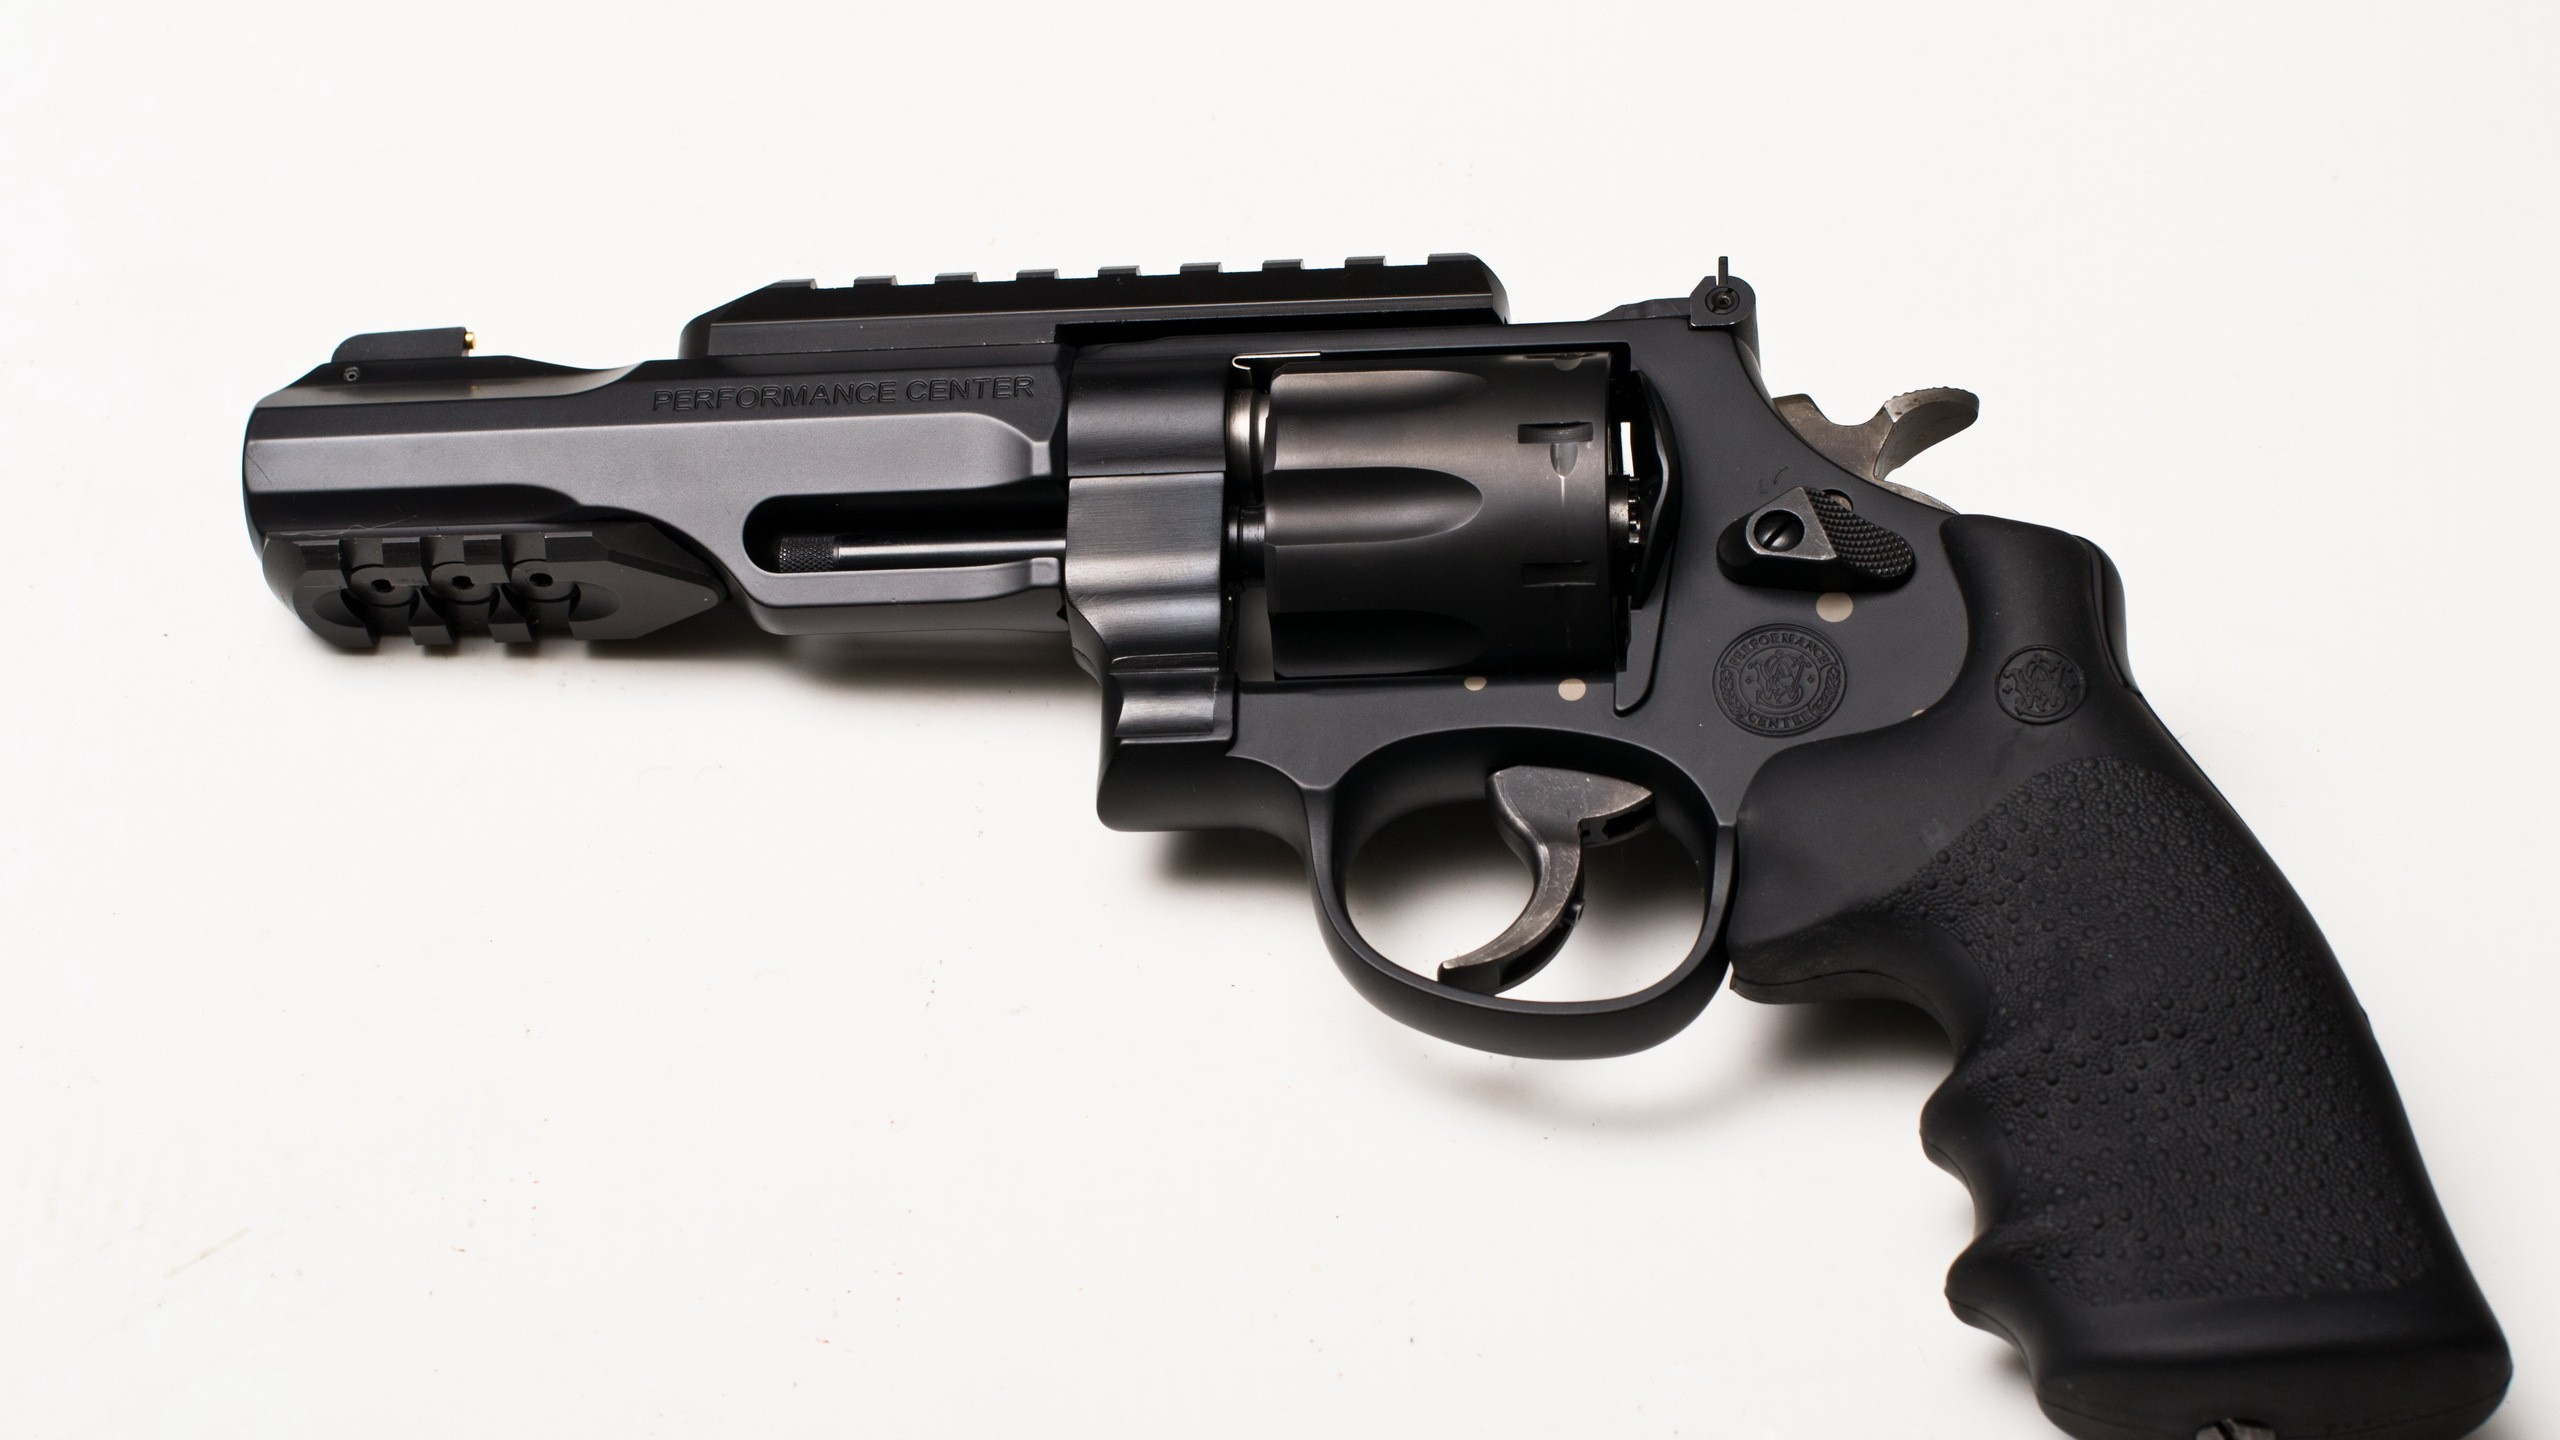 Handfeuerwaffe, Feuerwaffe, Revolver, Trigger, Gun Barrel. Wallpaper in 2560x1440 Resolution